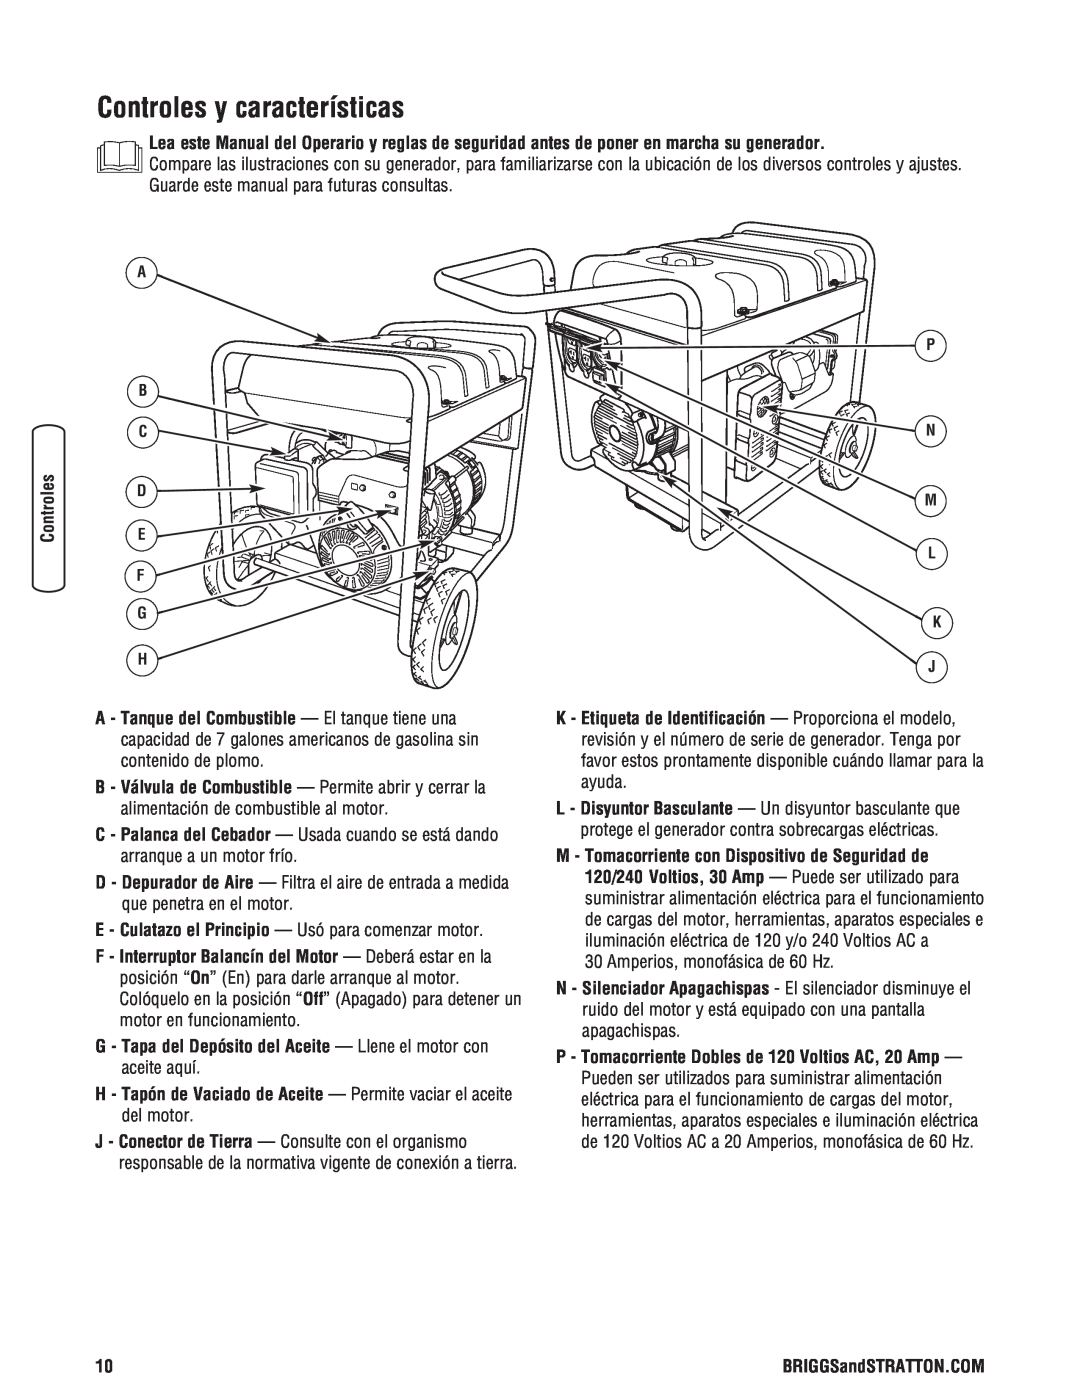 Briggs & Stratton Portable Generator manual Controles y características 